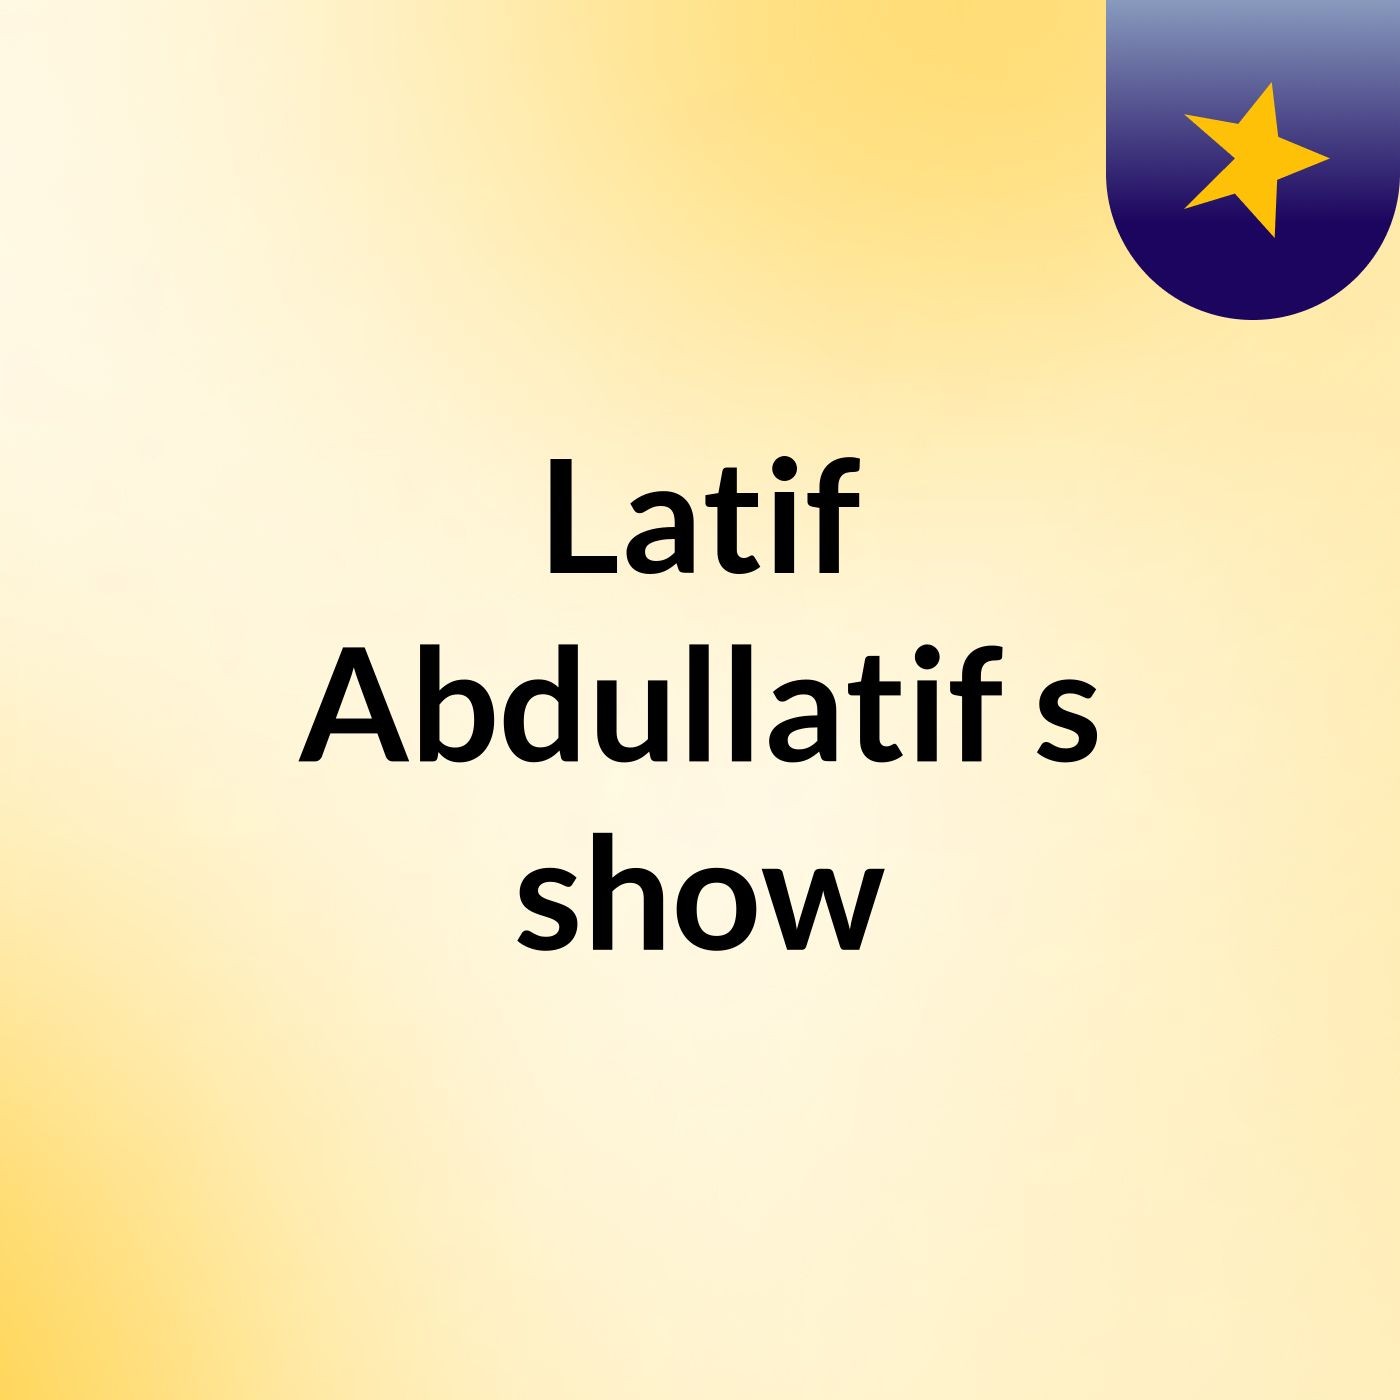 Latif Abdullatif's show